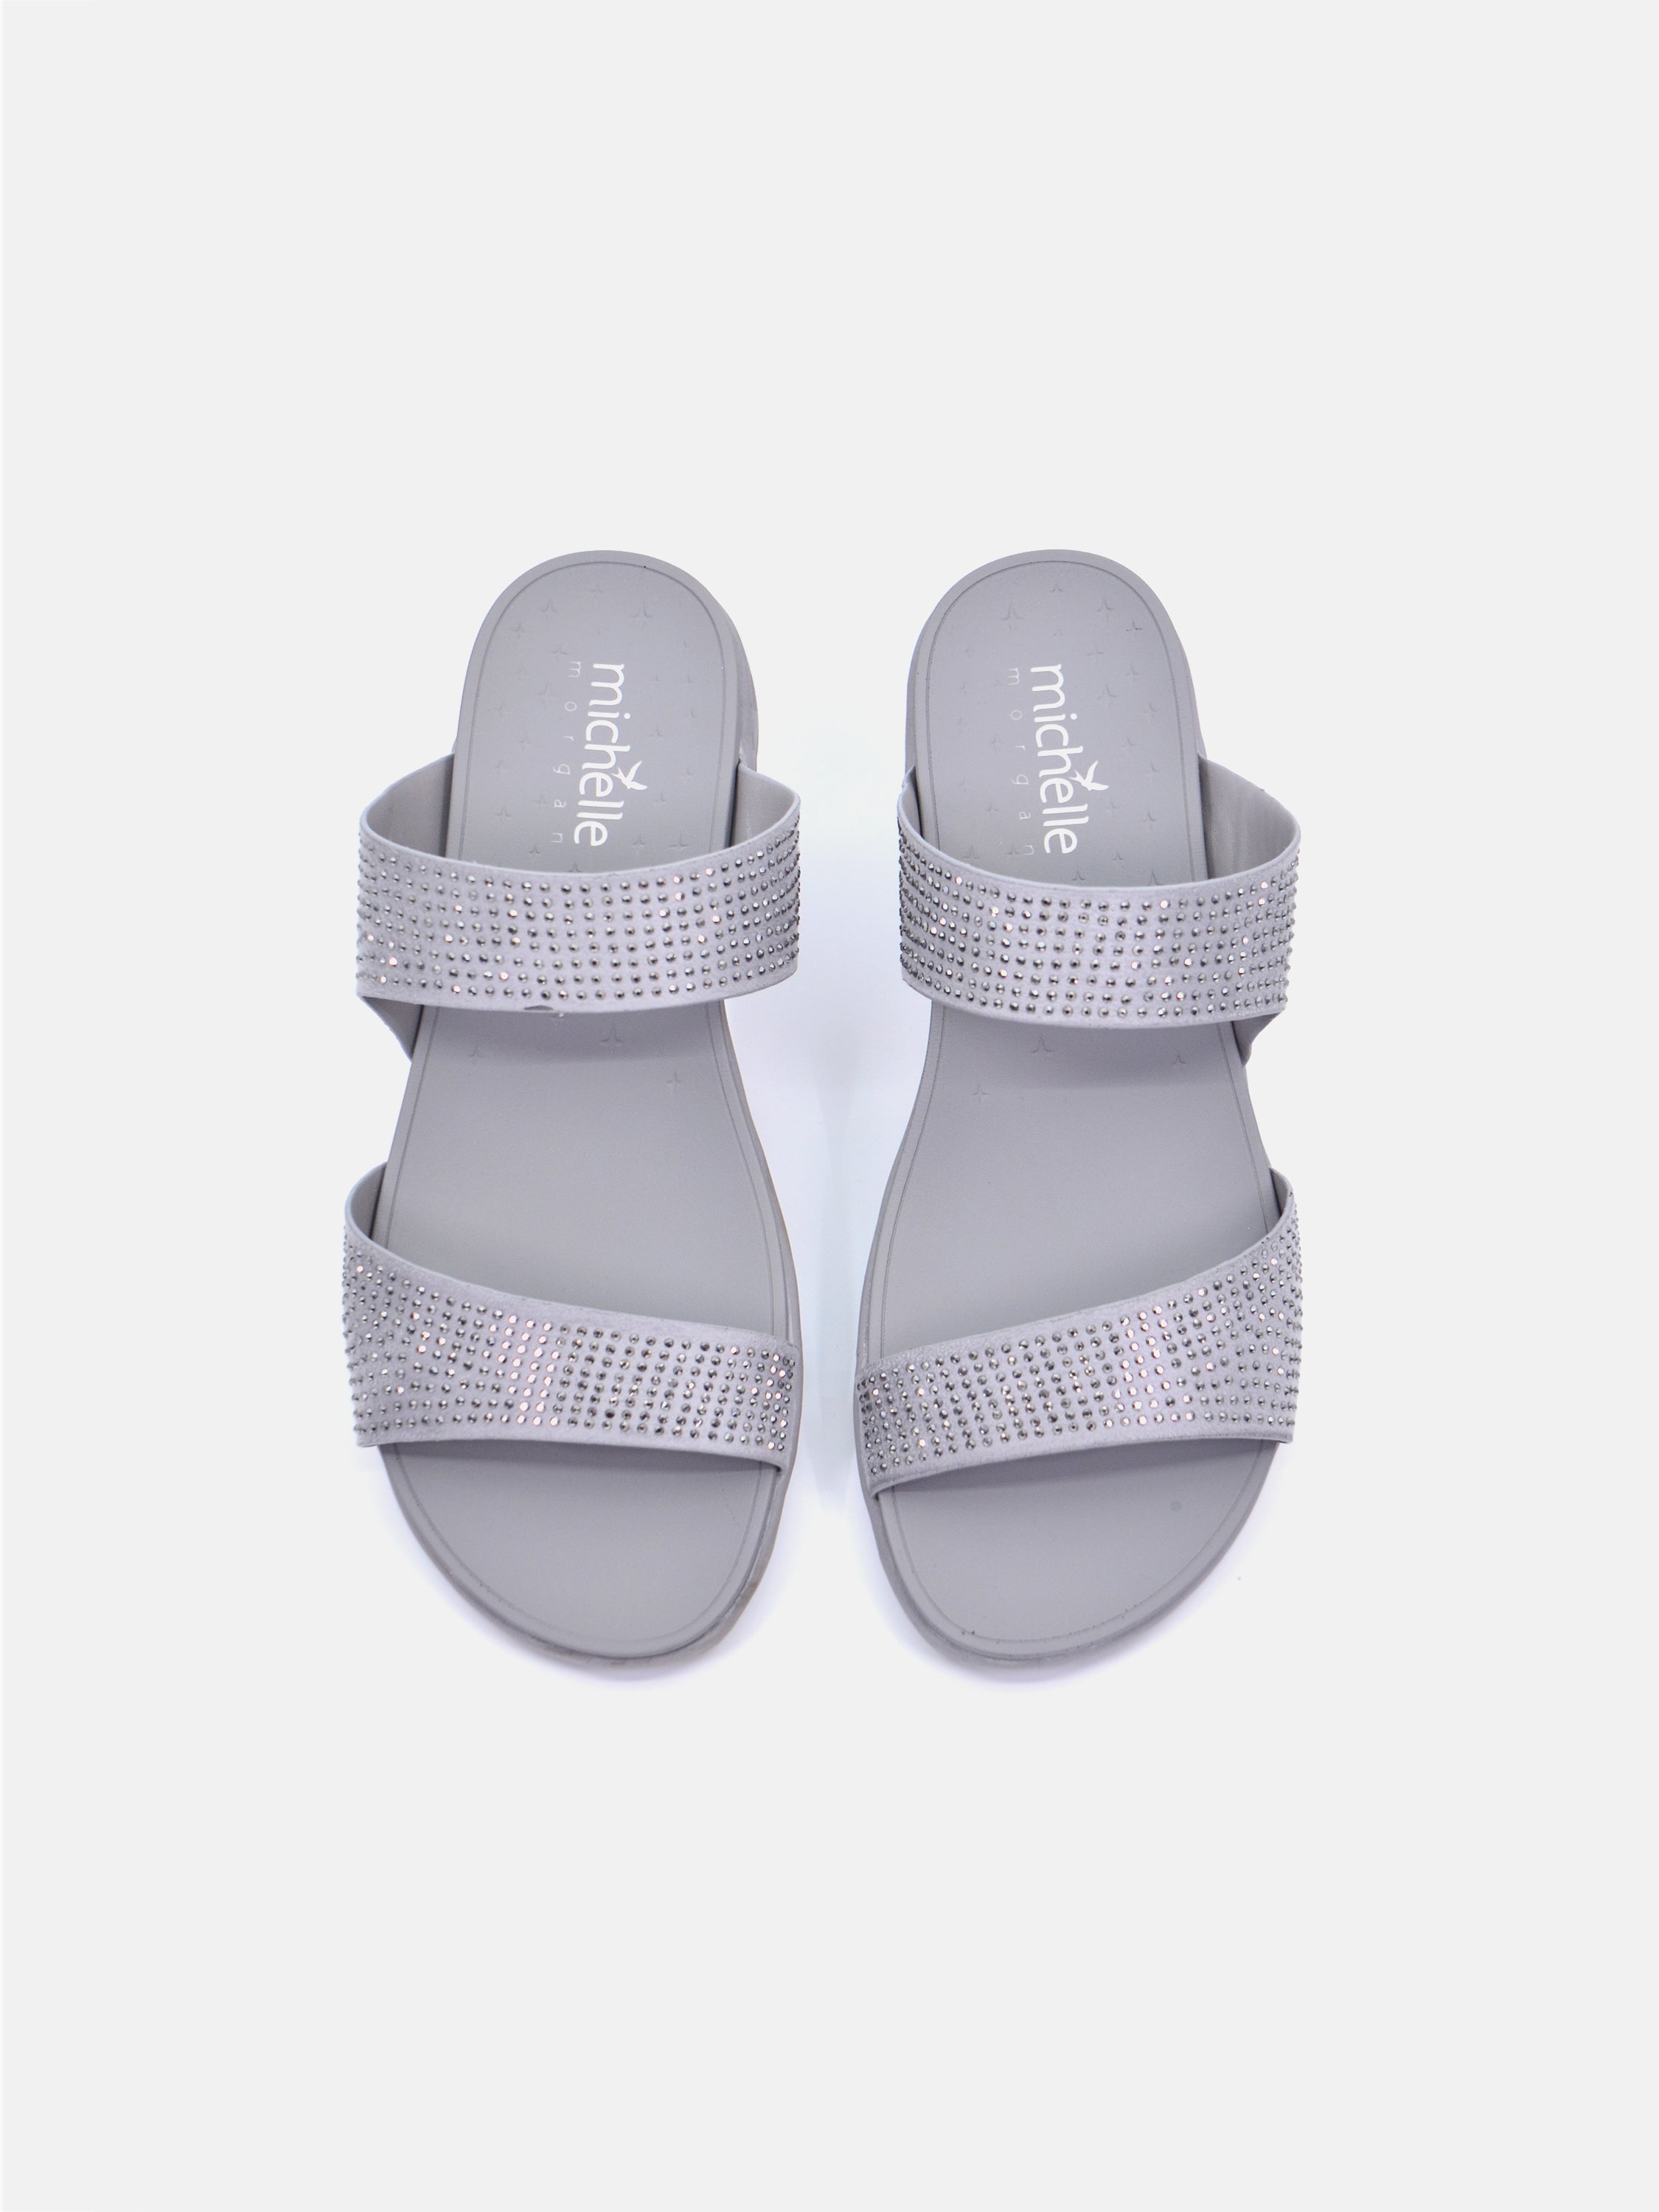 Michelle Morgan 814RJ082 Women's Flat Sandals #color_Silver